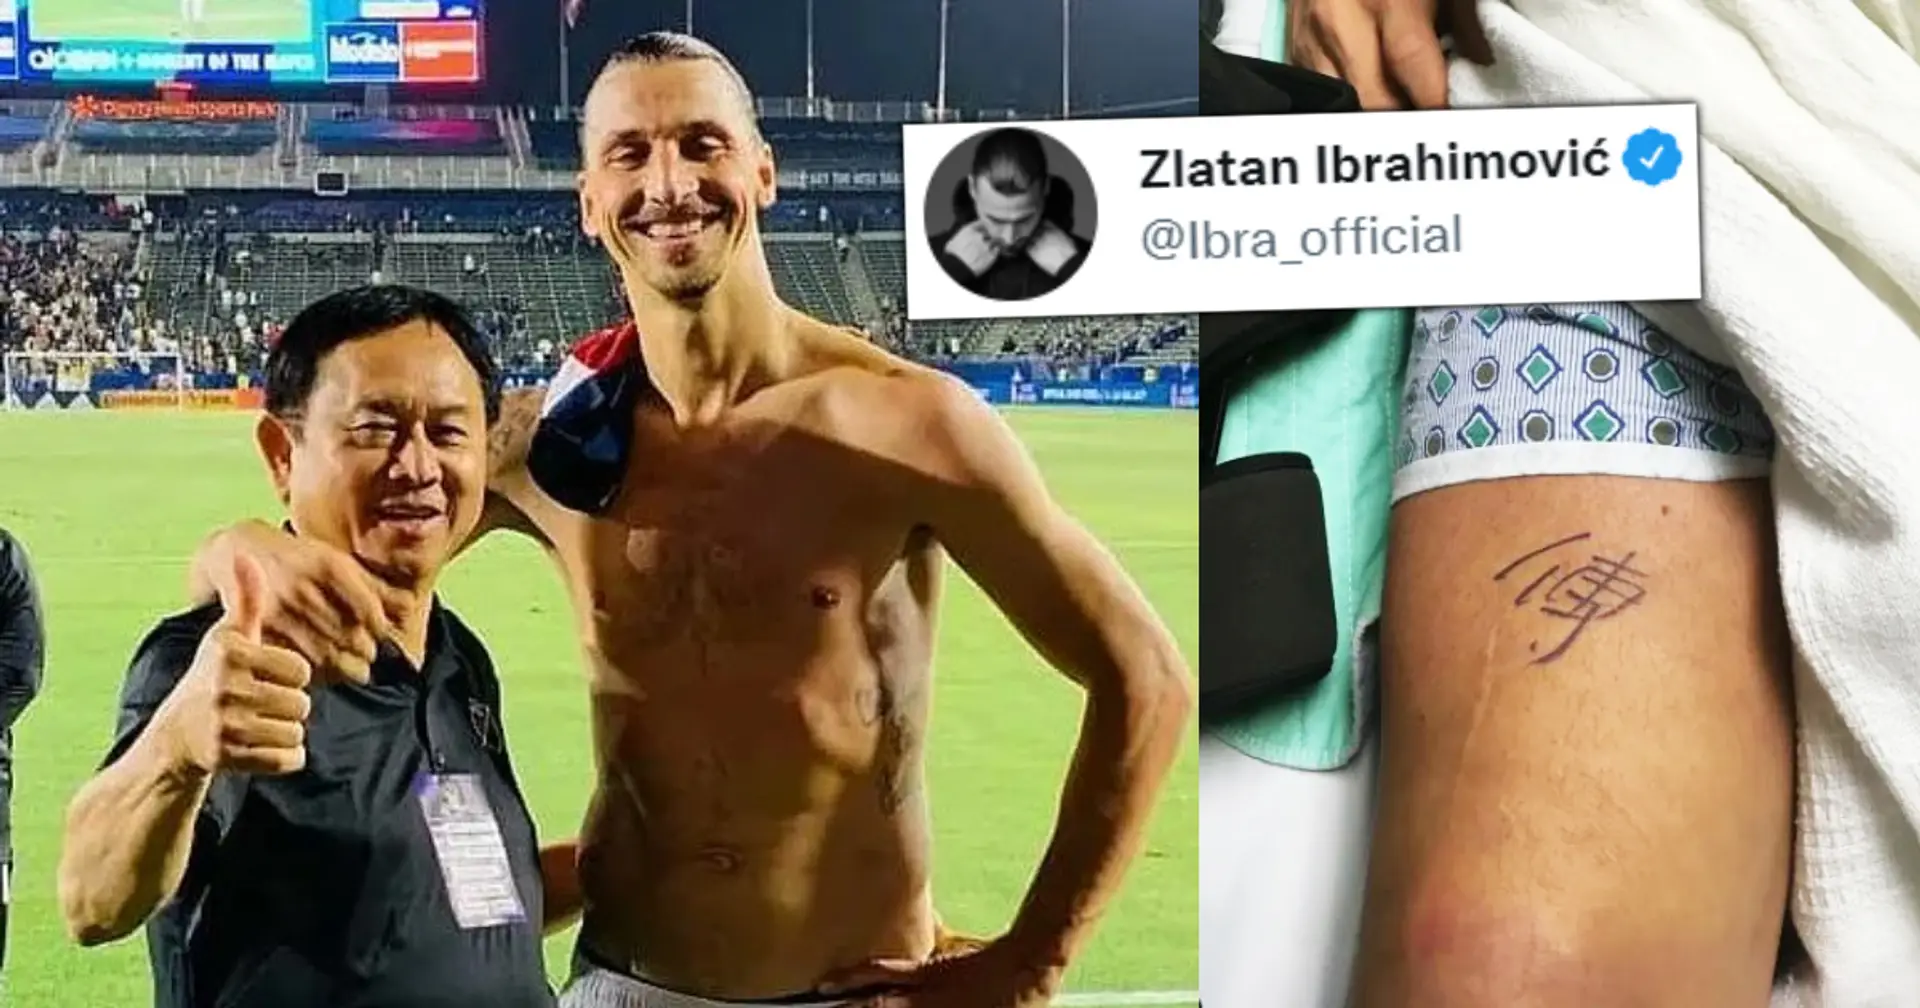 Pourquoi Zlatan a dédié un tatouage à l'homme à côté de lui dans le dernier post – expliqué